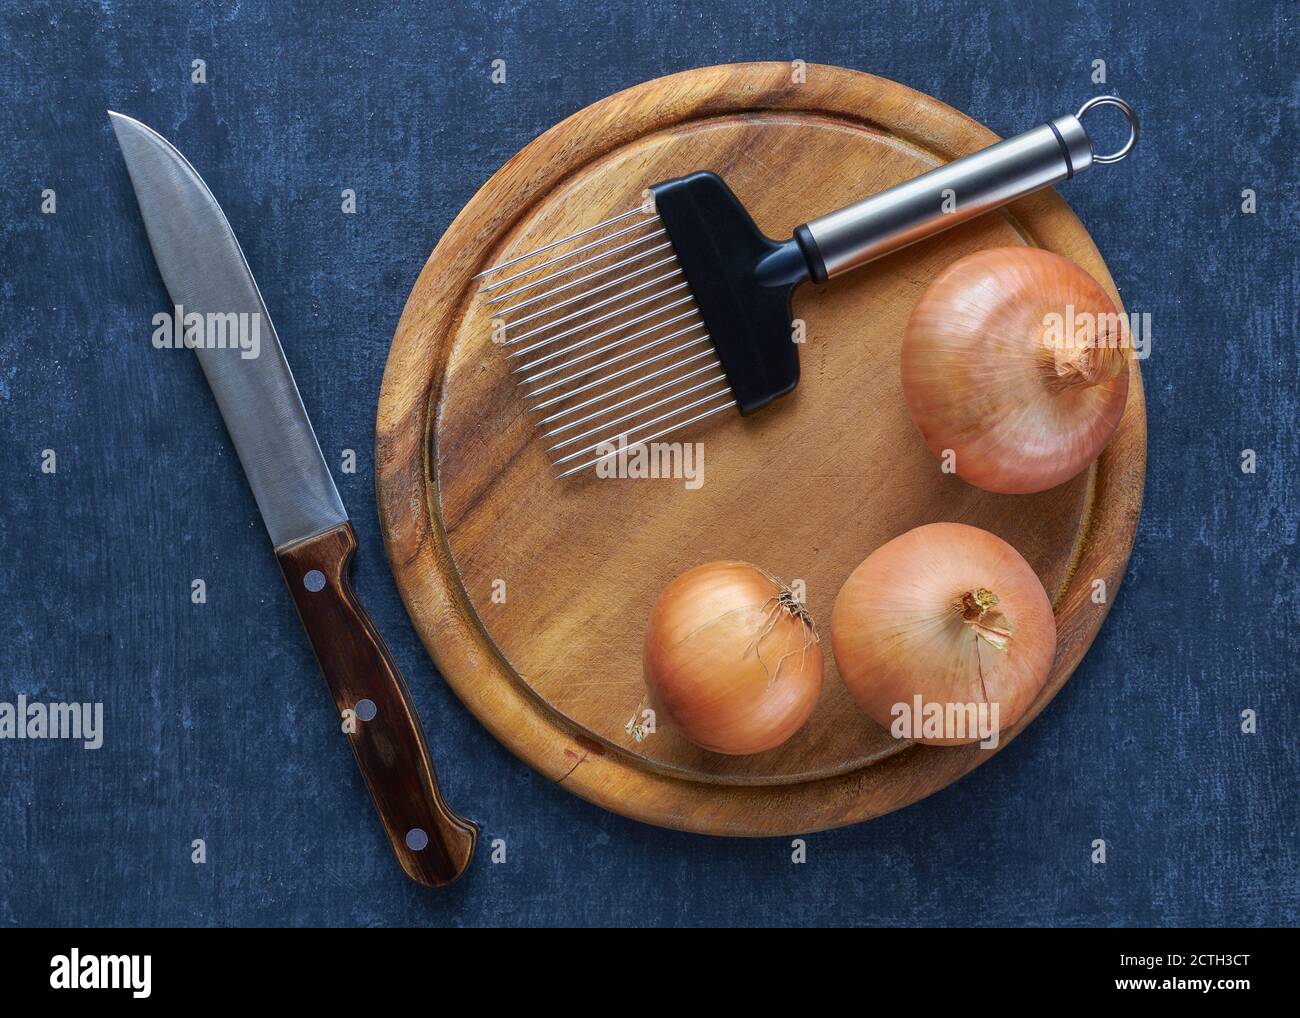 Vue de dessus sur le porte-coupe Onion, trois arceaux et un couteau de cuisine Banque D'Images